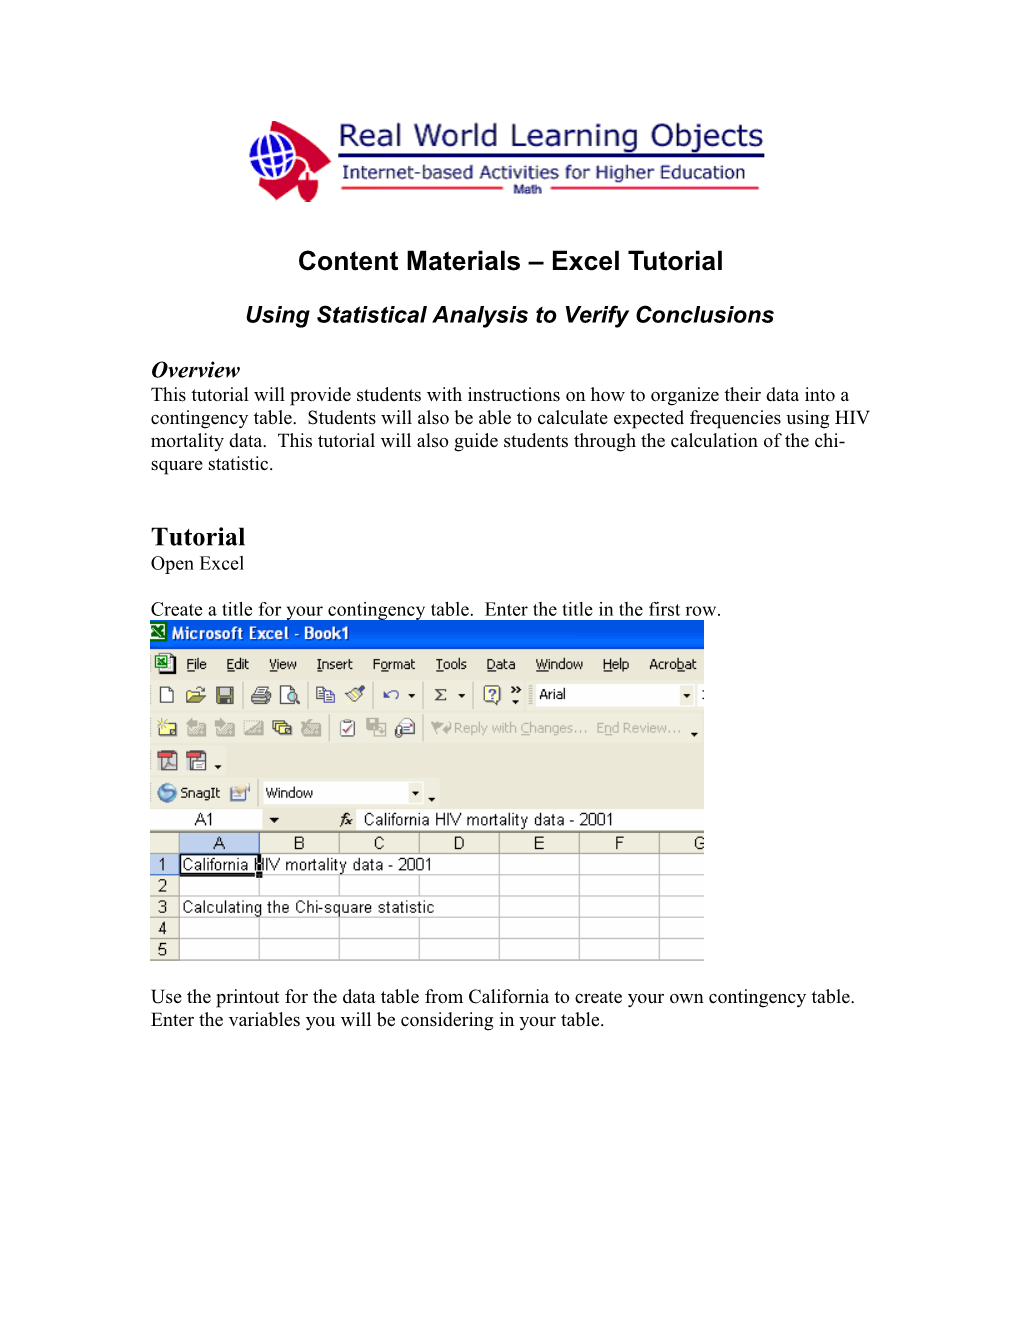 Content Materials Excel Tutorial